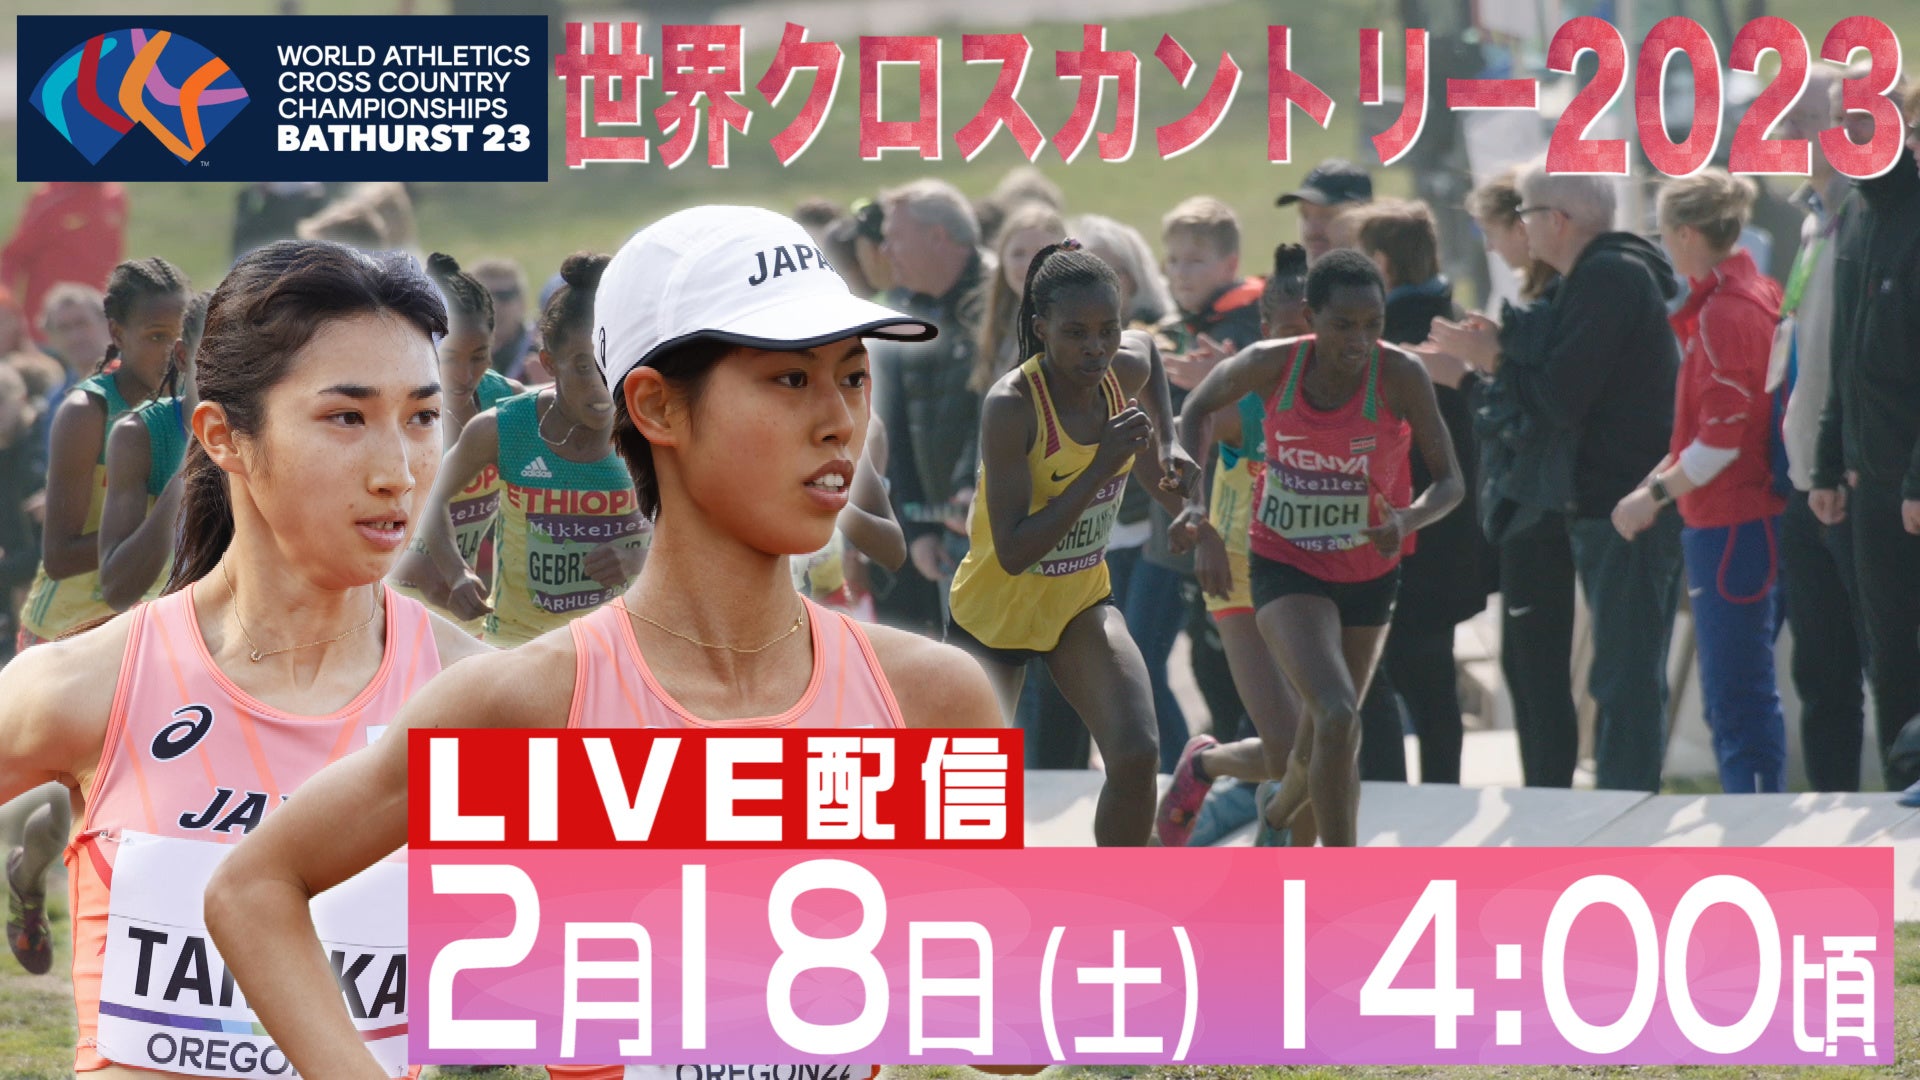 「東京マラソン2023」の表彰メダルを純金・純銀・純銅で提供